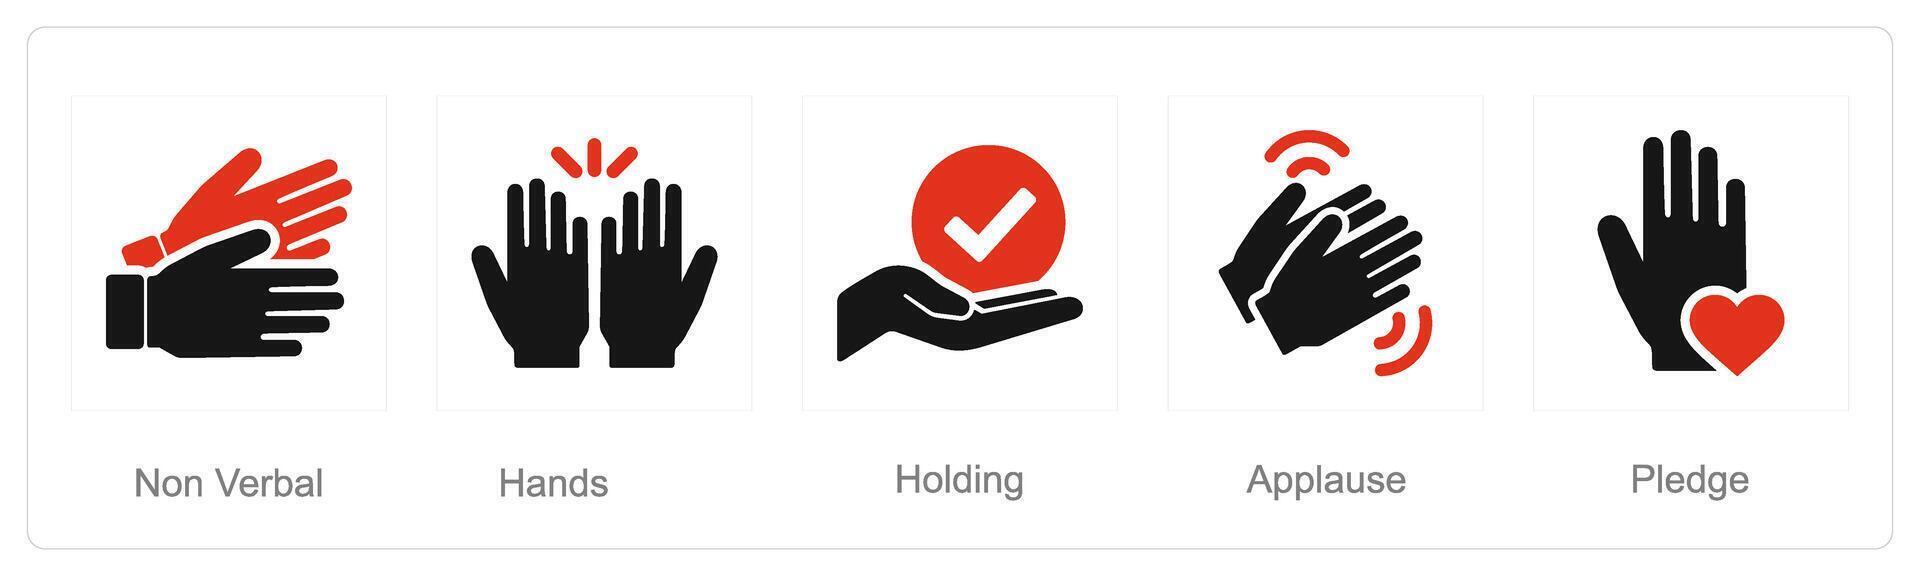 en uppsättning av 5 händer ikoner som icke verbal, händer, innehav vektor